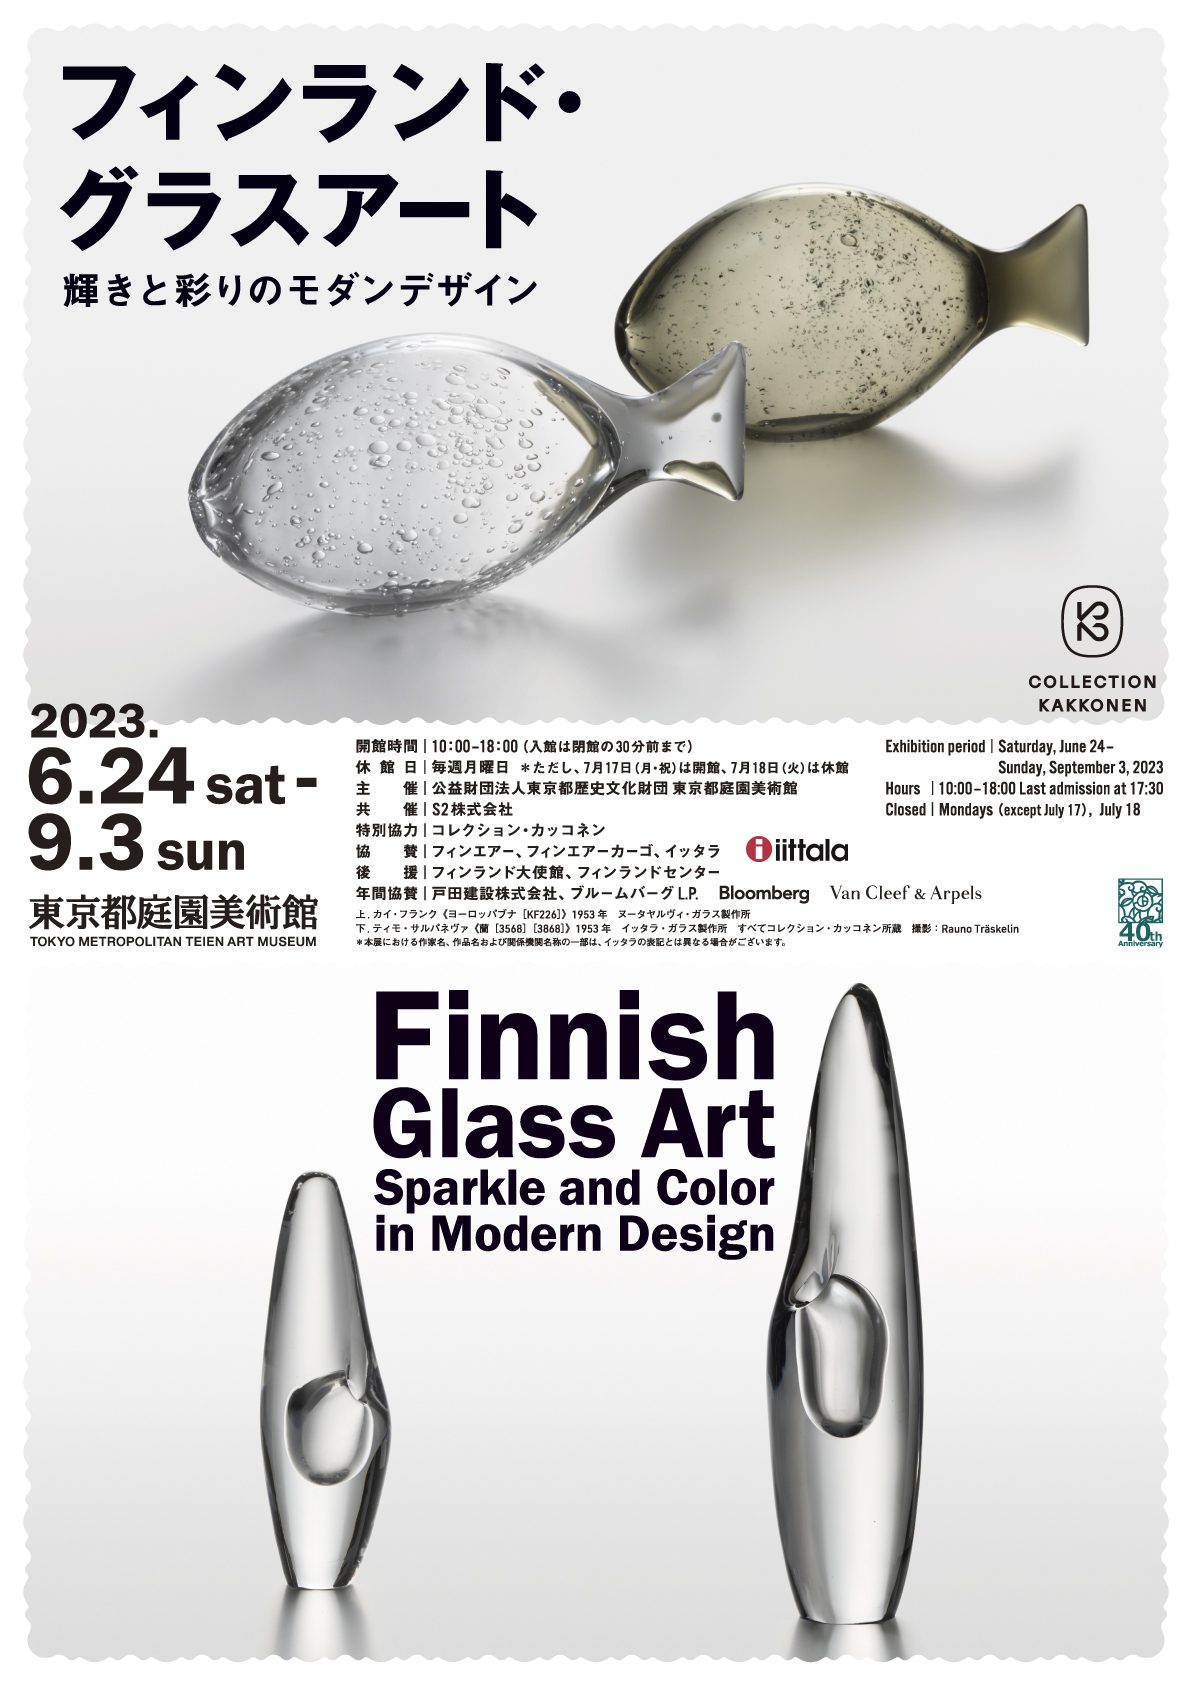 77％以上節約 フィンランド グラスアート チケット 東京都庭園美術館